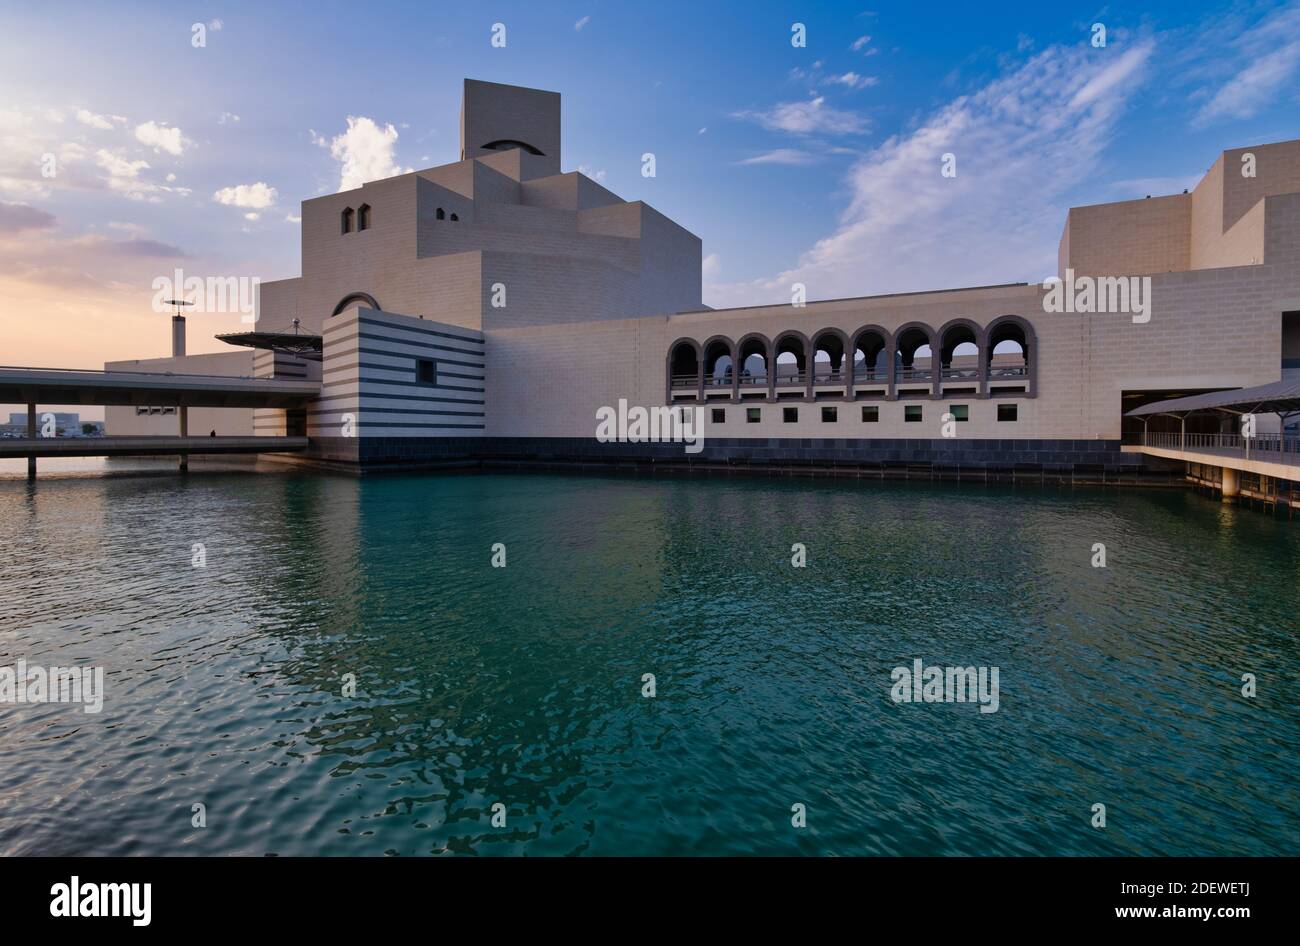 Museum für Islamische Kunst, Doha, Katar bei Sonnenuntergang Außenansicht zeigt die moderne Architektur des Gebäudes und Wolken im Himmel im Hintergrund Stockfoto